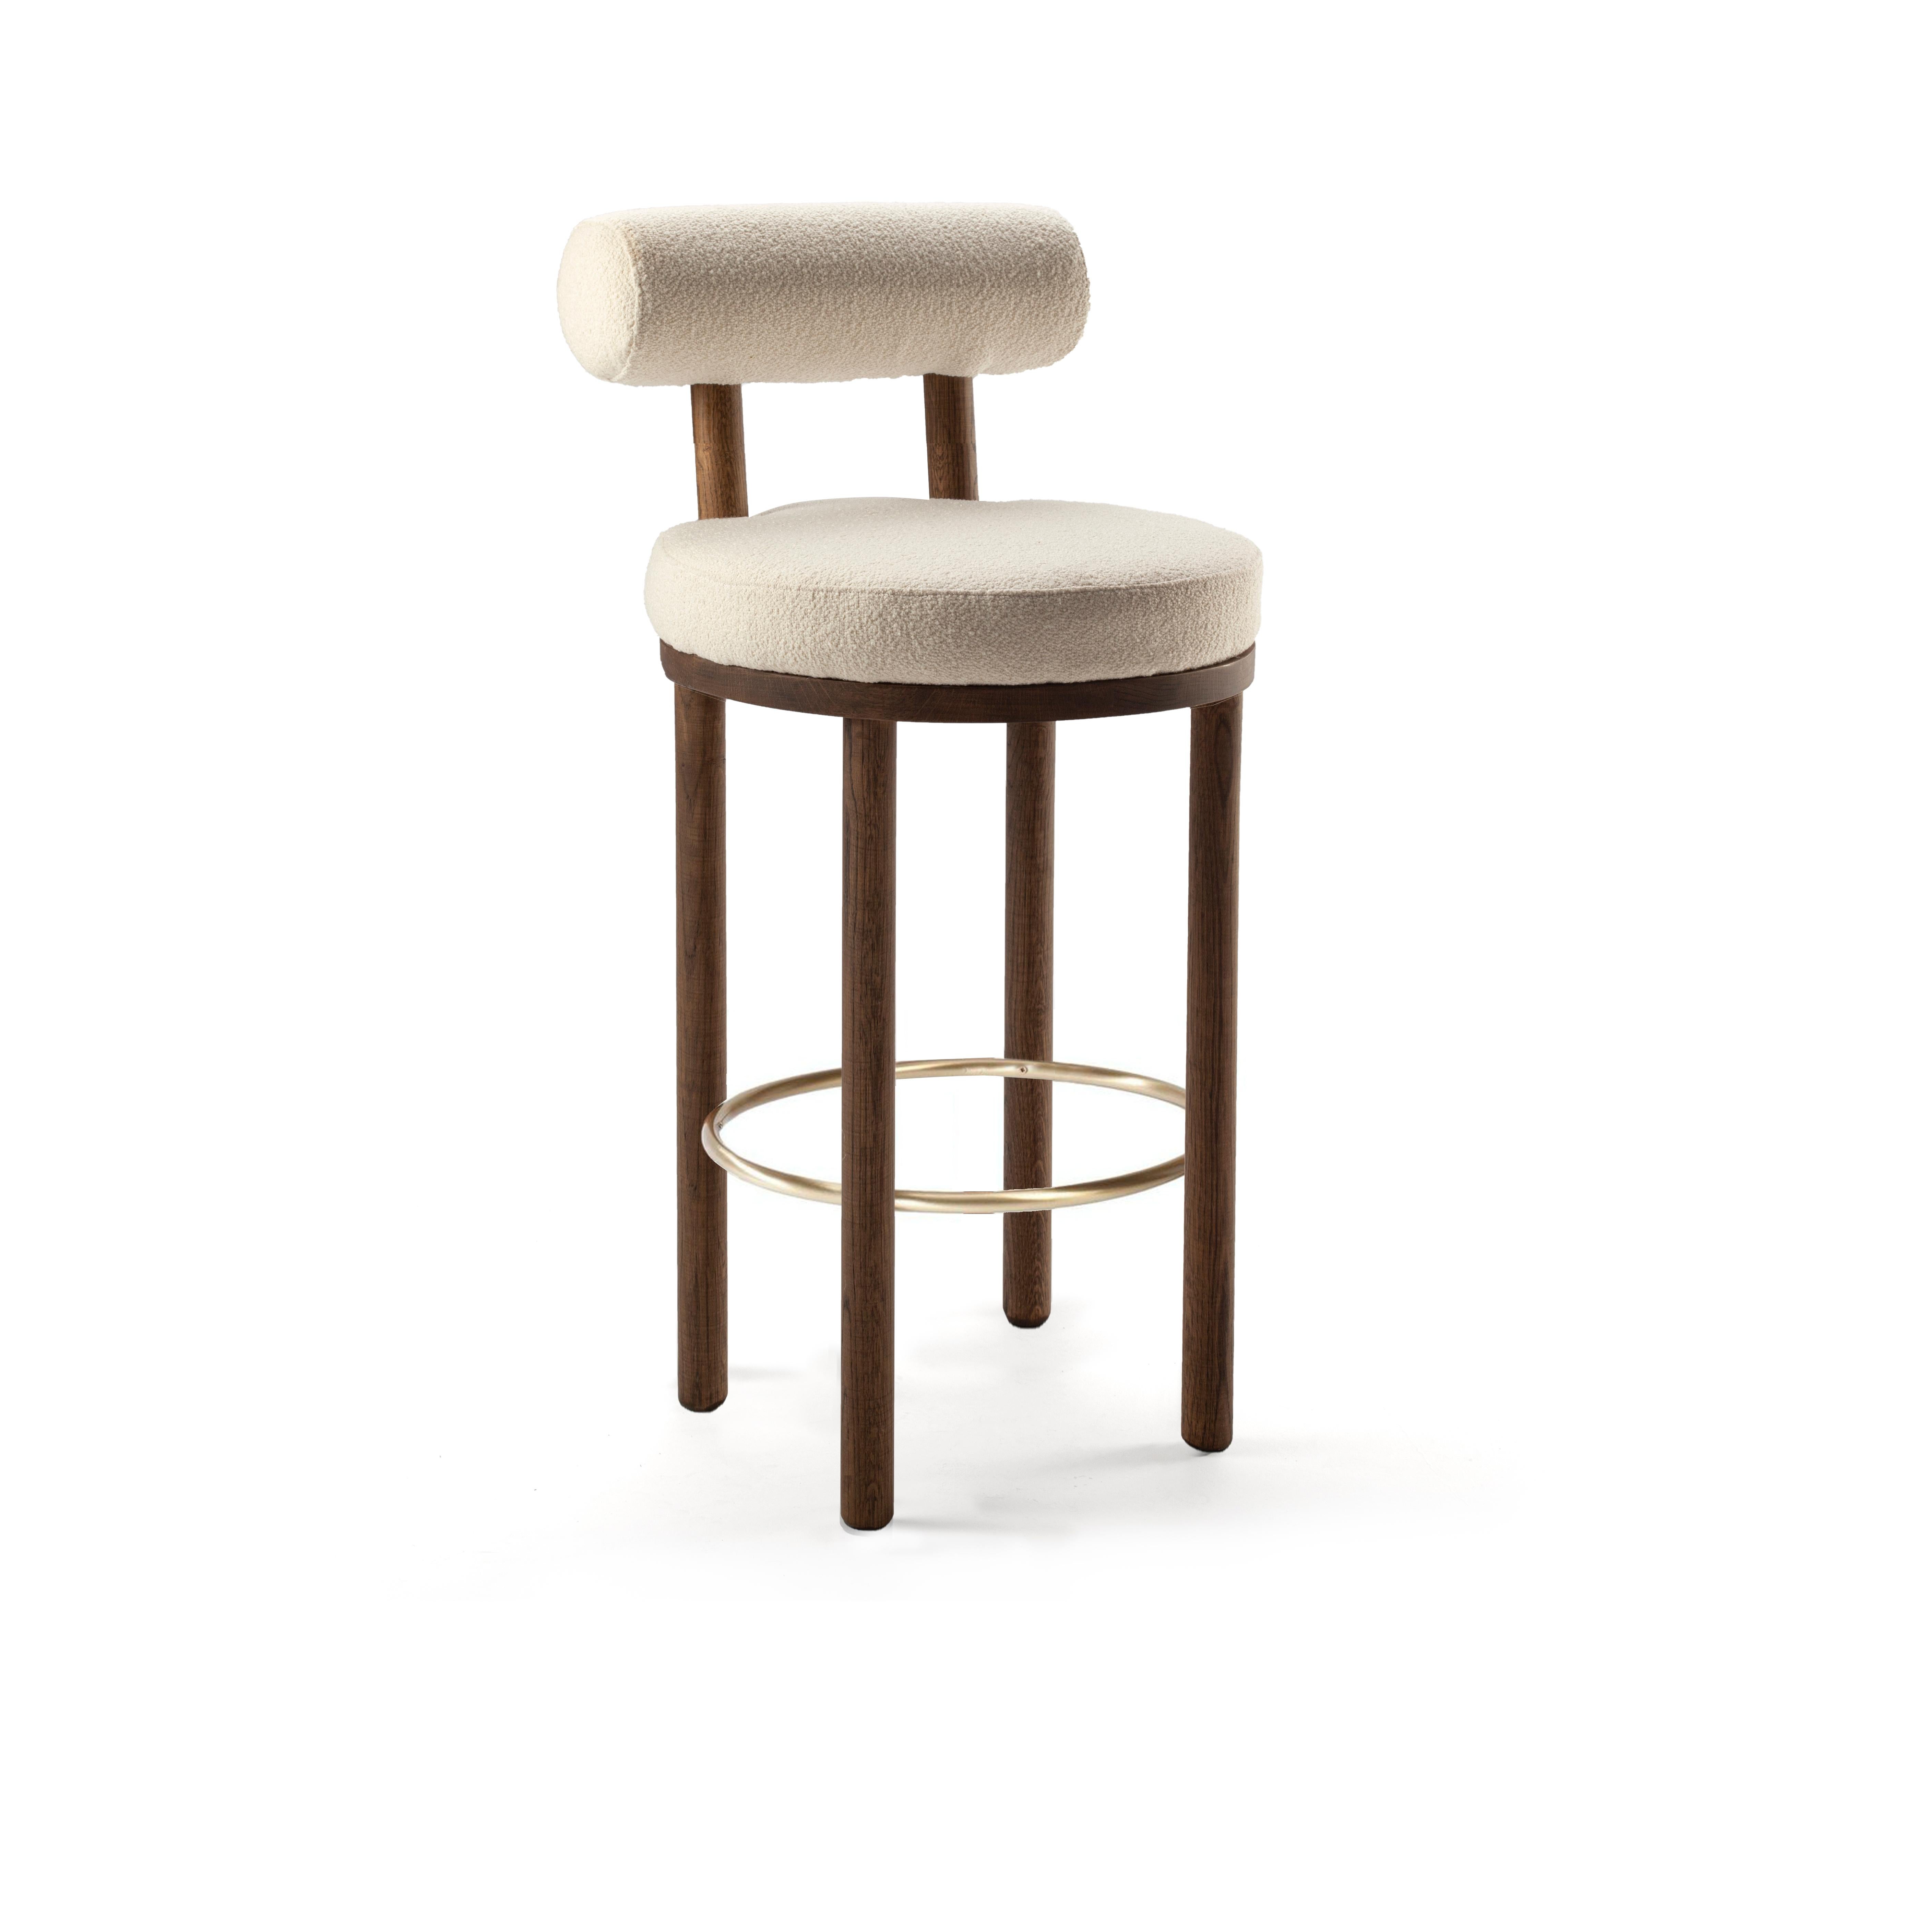 Une chaise qui mélange les approches de design moderne et classique.
Conçue pour épouser le corps, cette chaise durable et solide se caractérise par une structure du corps en bois massif.